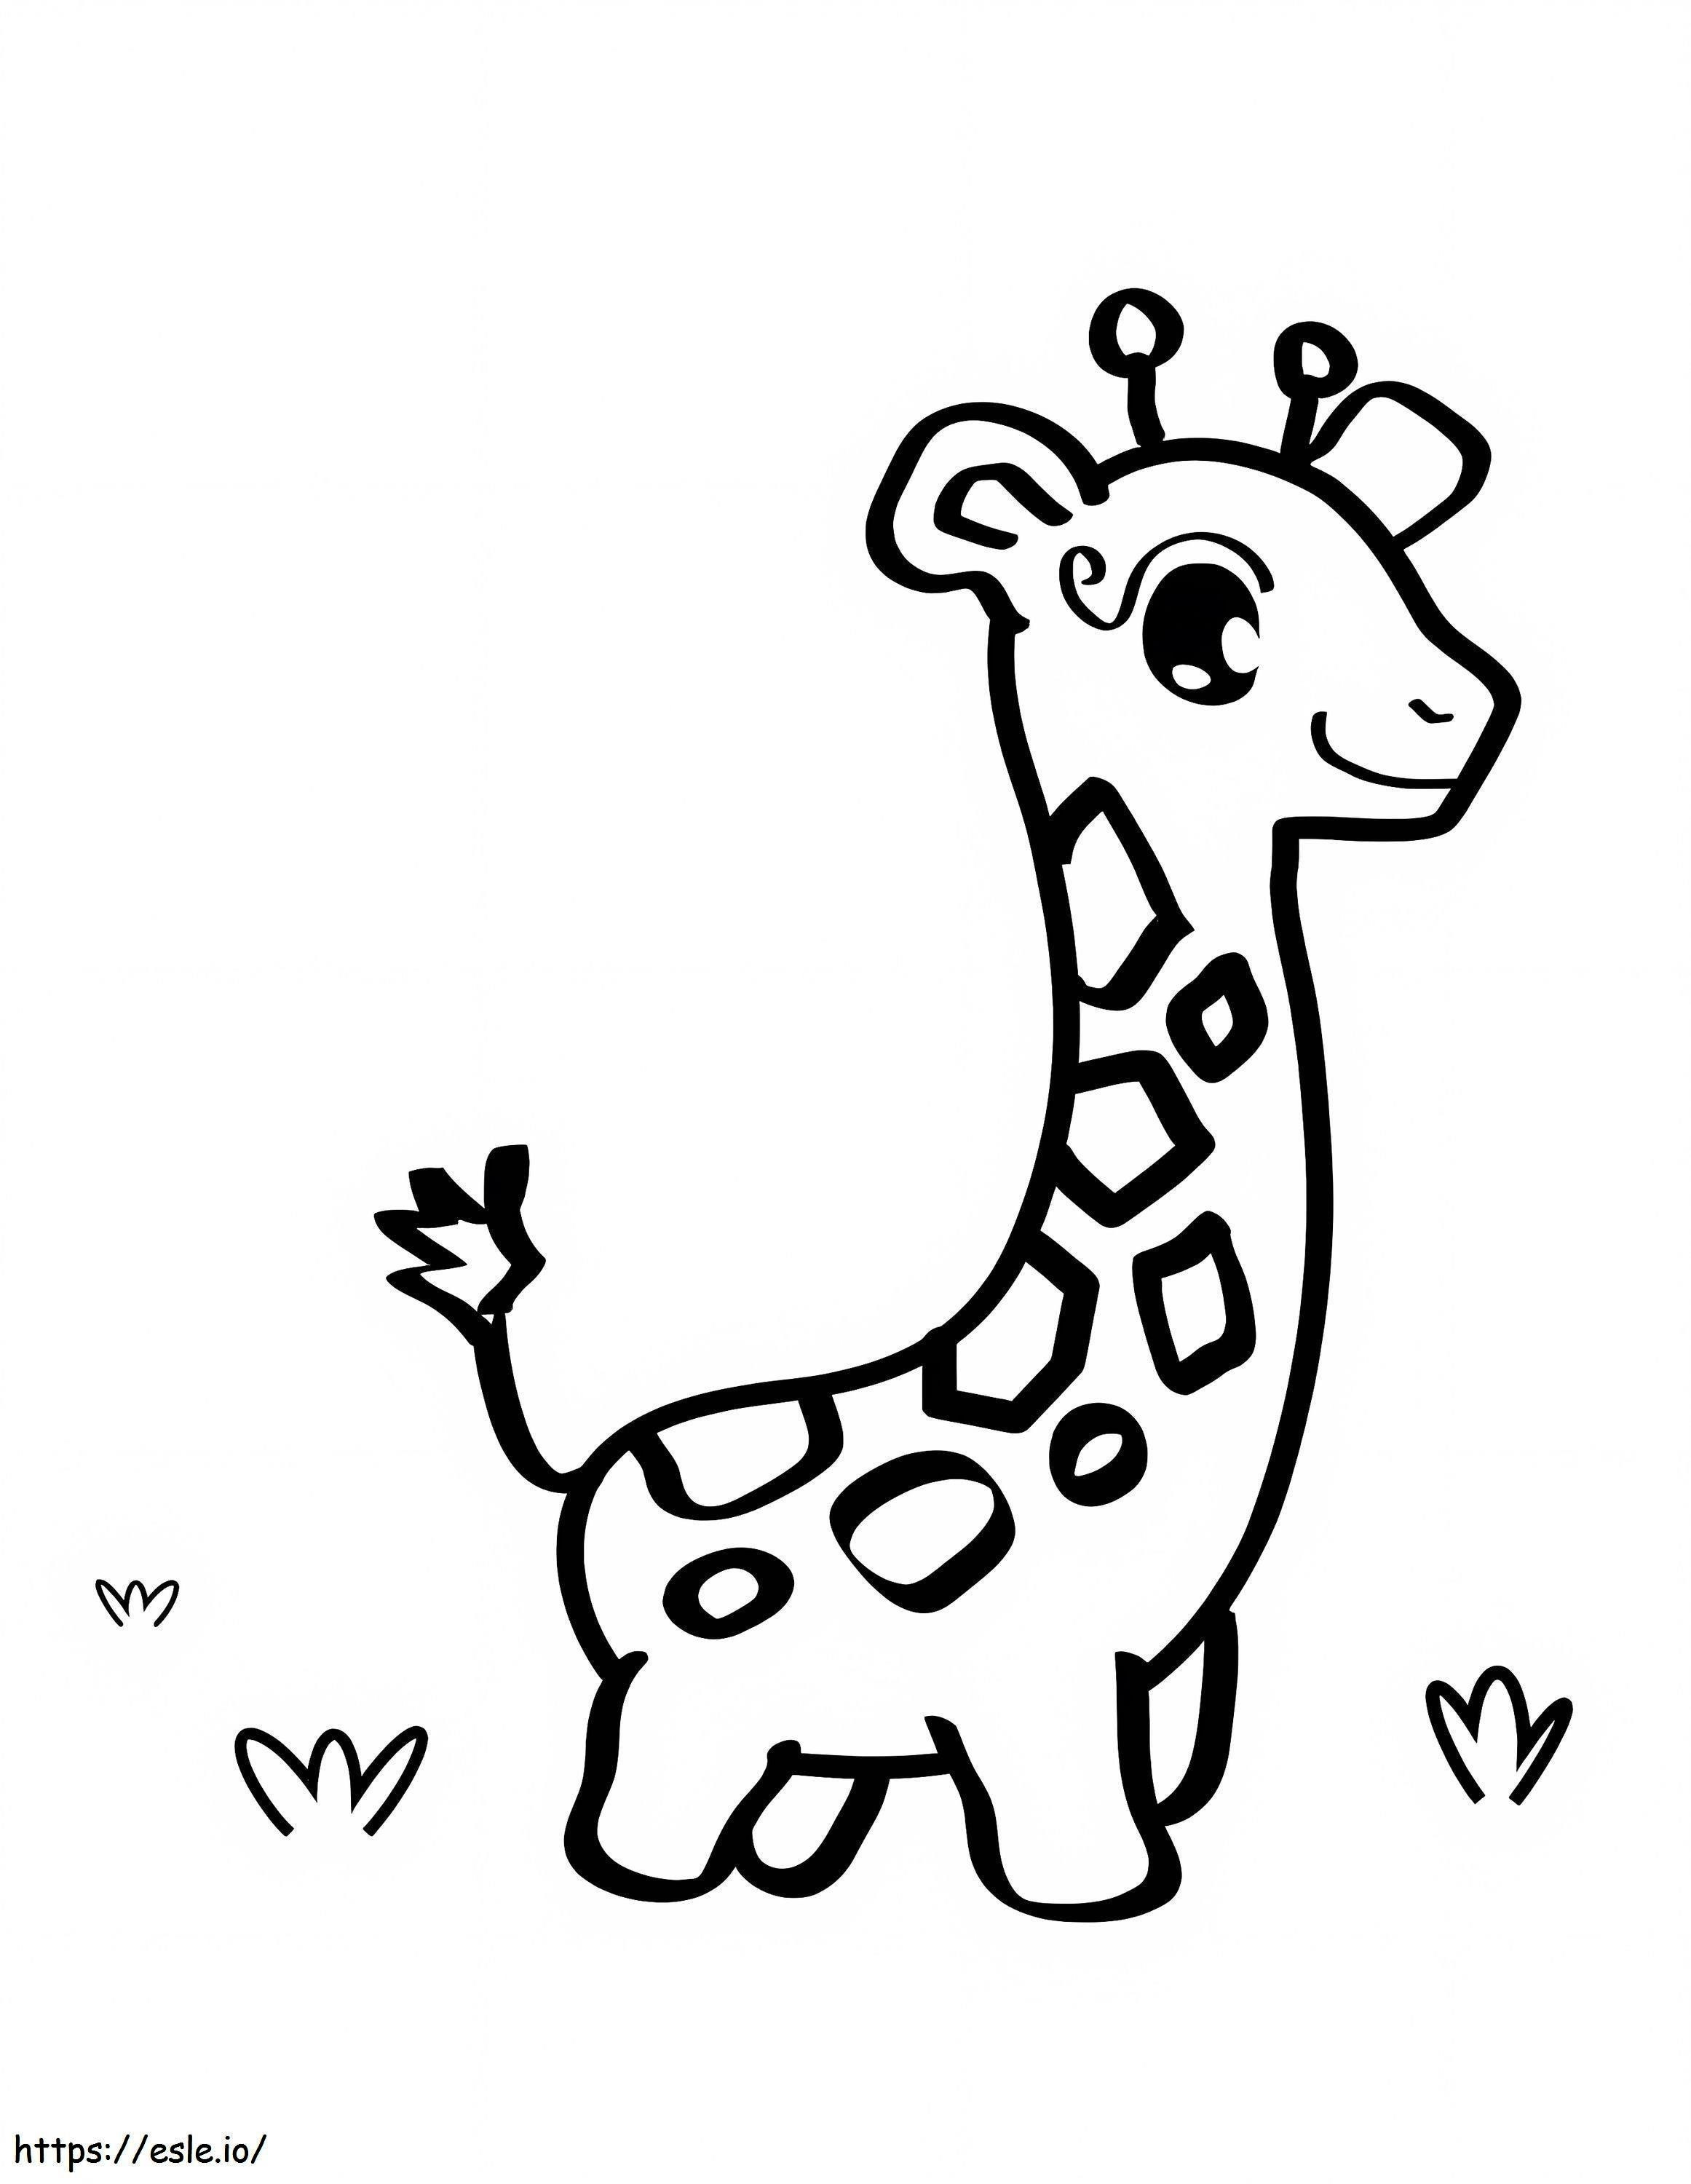 Niedliche Giraffe für 1-jährige Kinder ausmalbilder